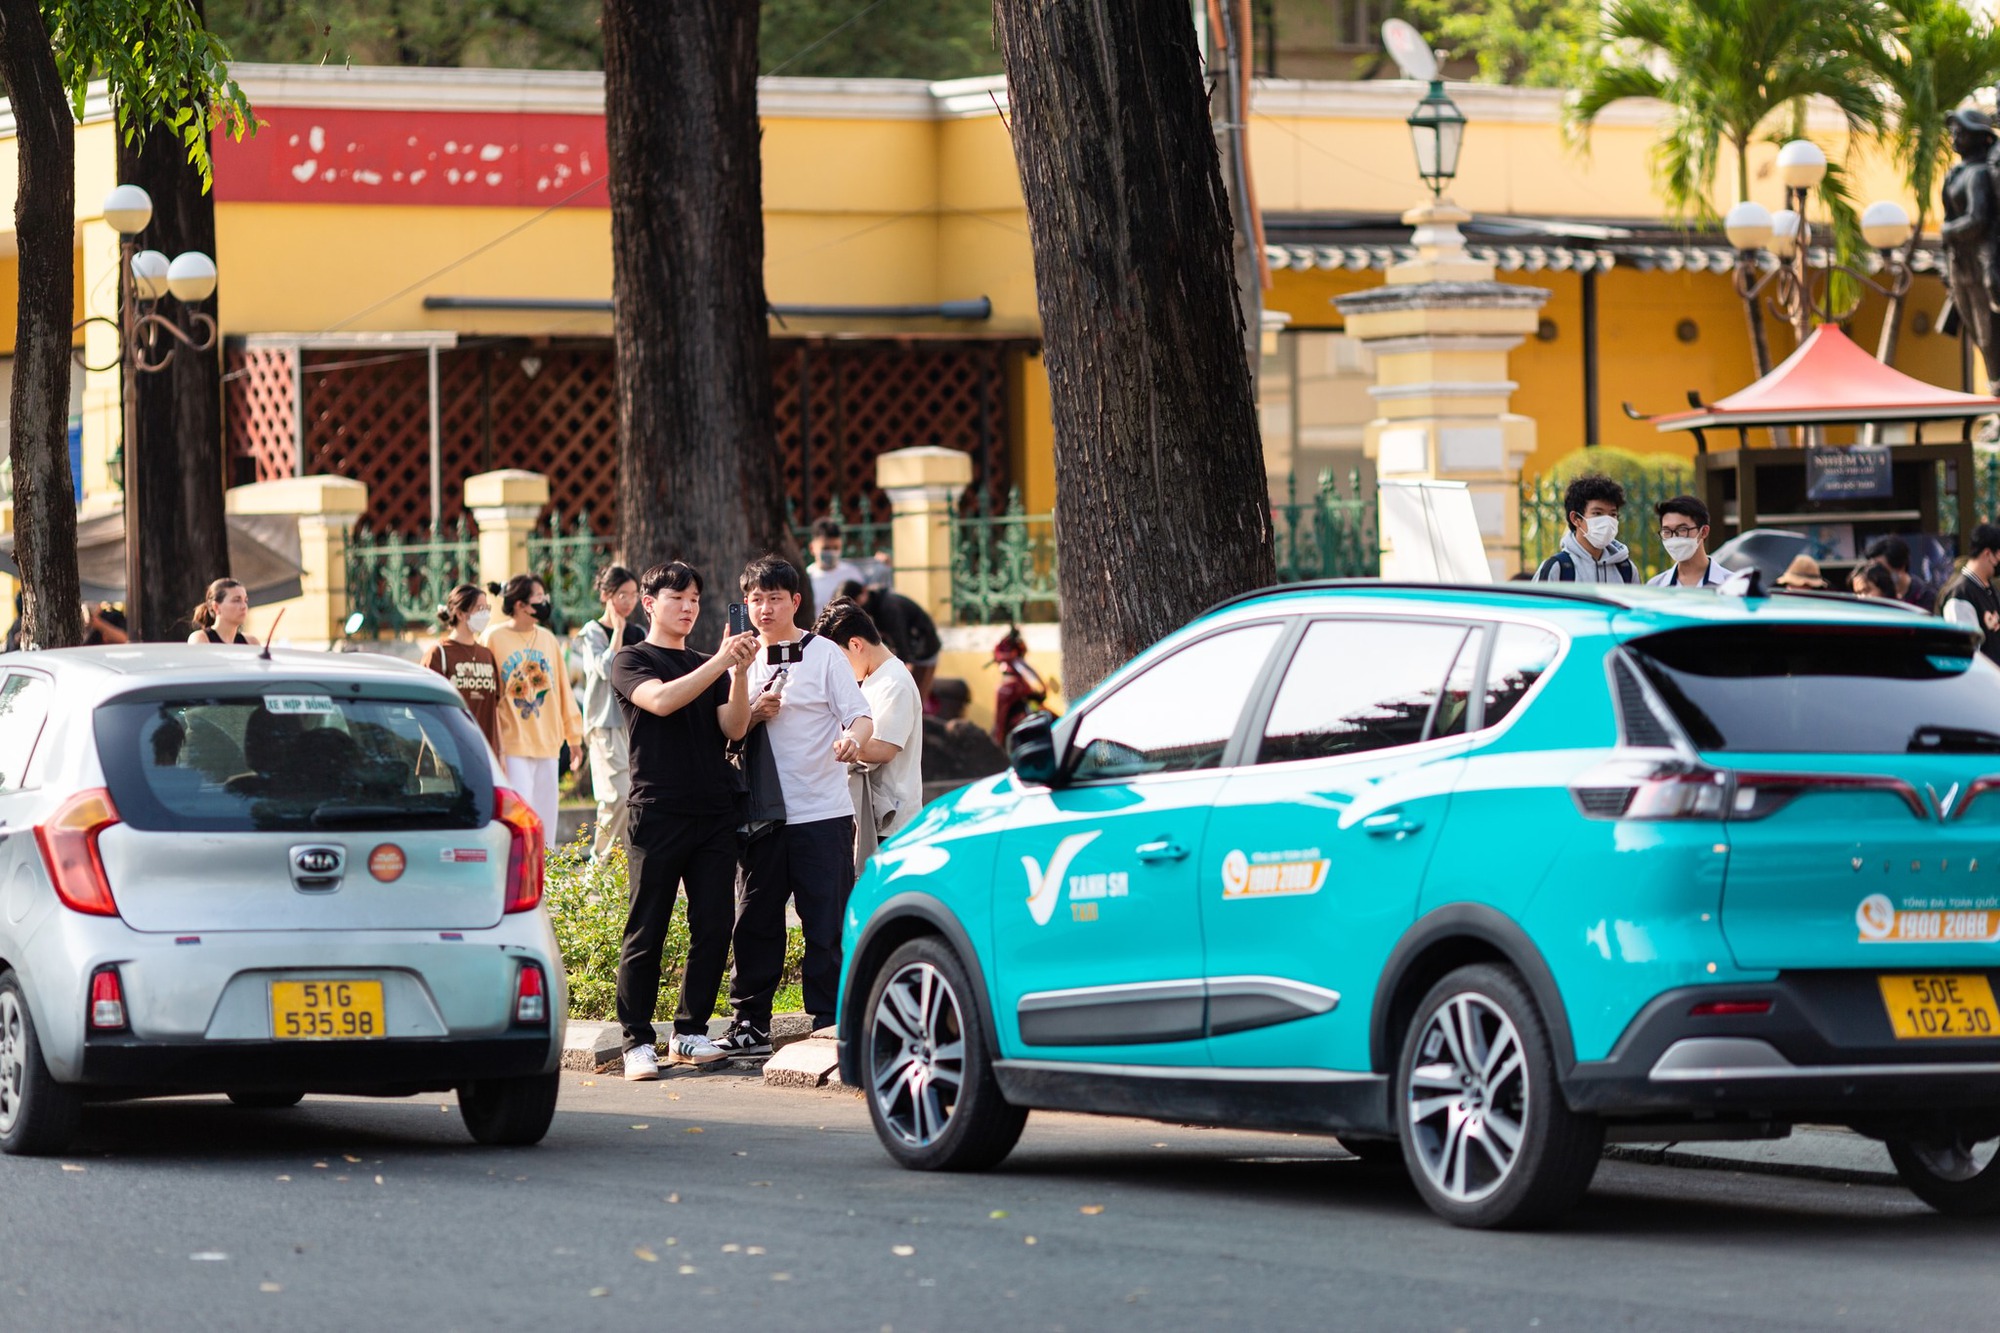 Taxi Xanh SM đạt 1 triệu chuyến sau 10 tuần, tiến tới phủ xanh 27 tỉnh thành trong năm 2023 - Ảnh 3.